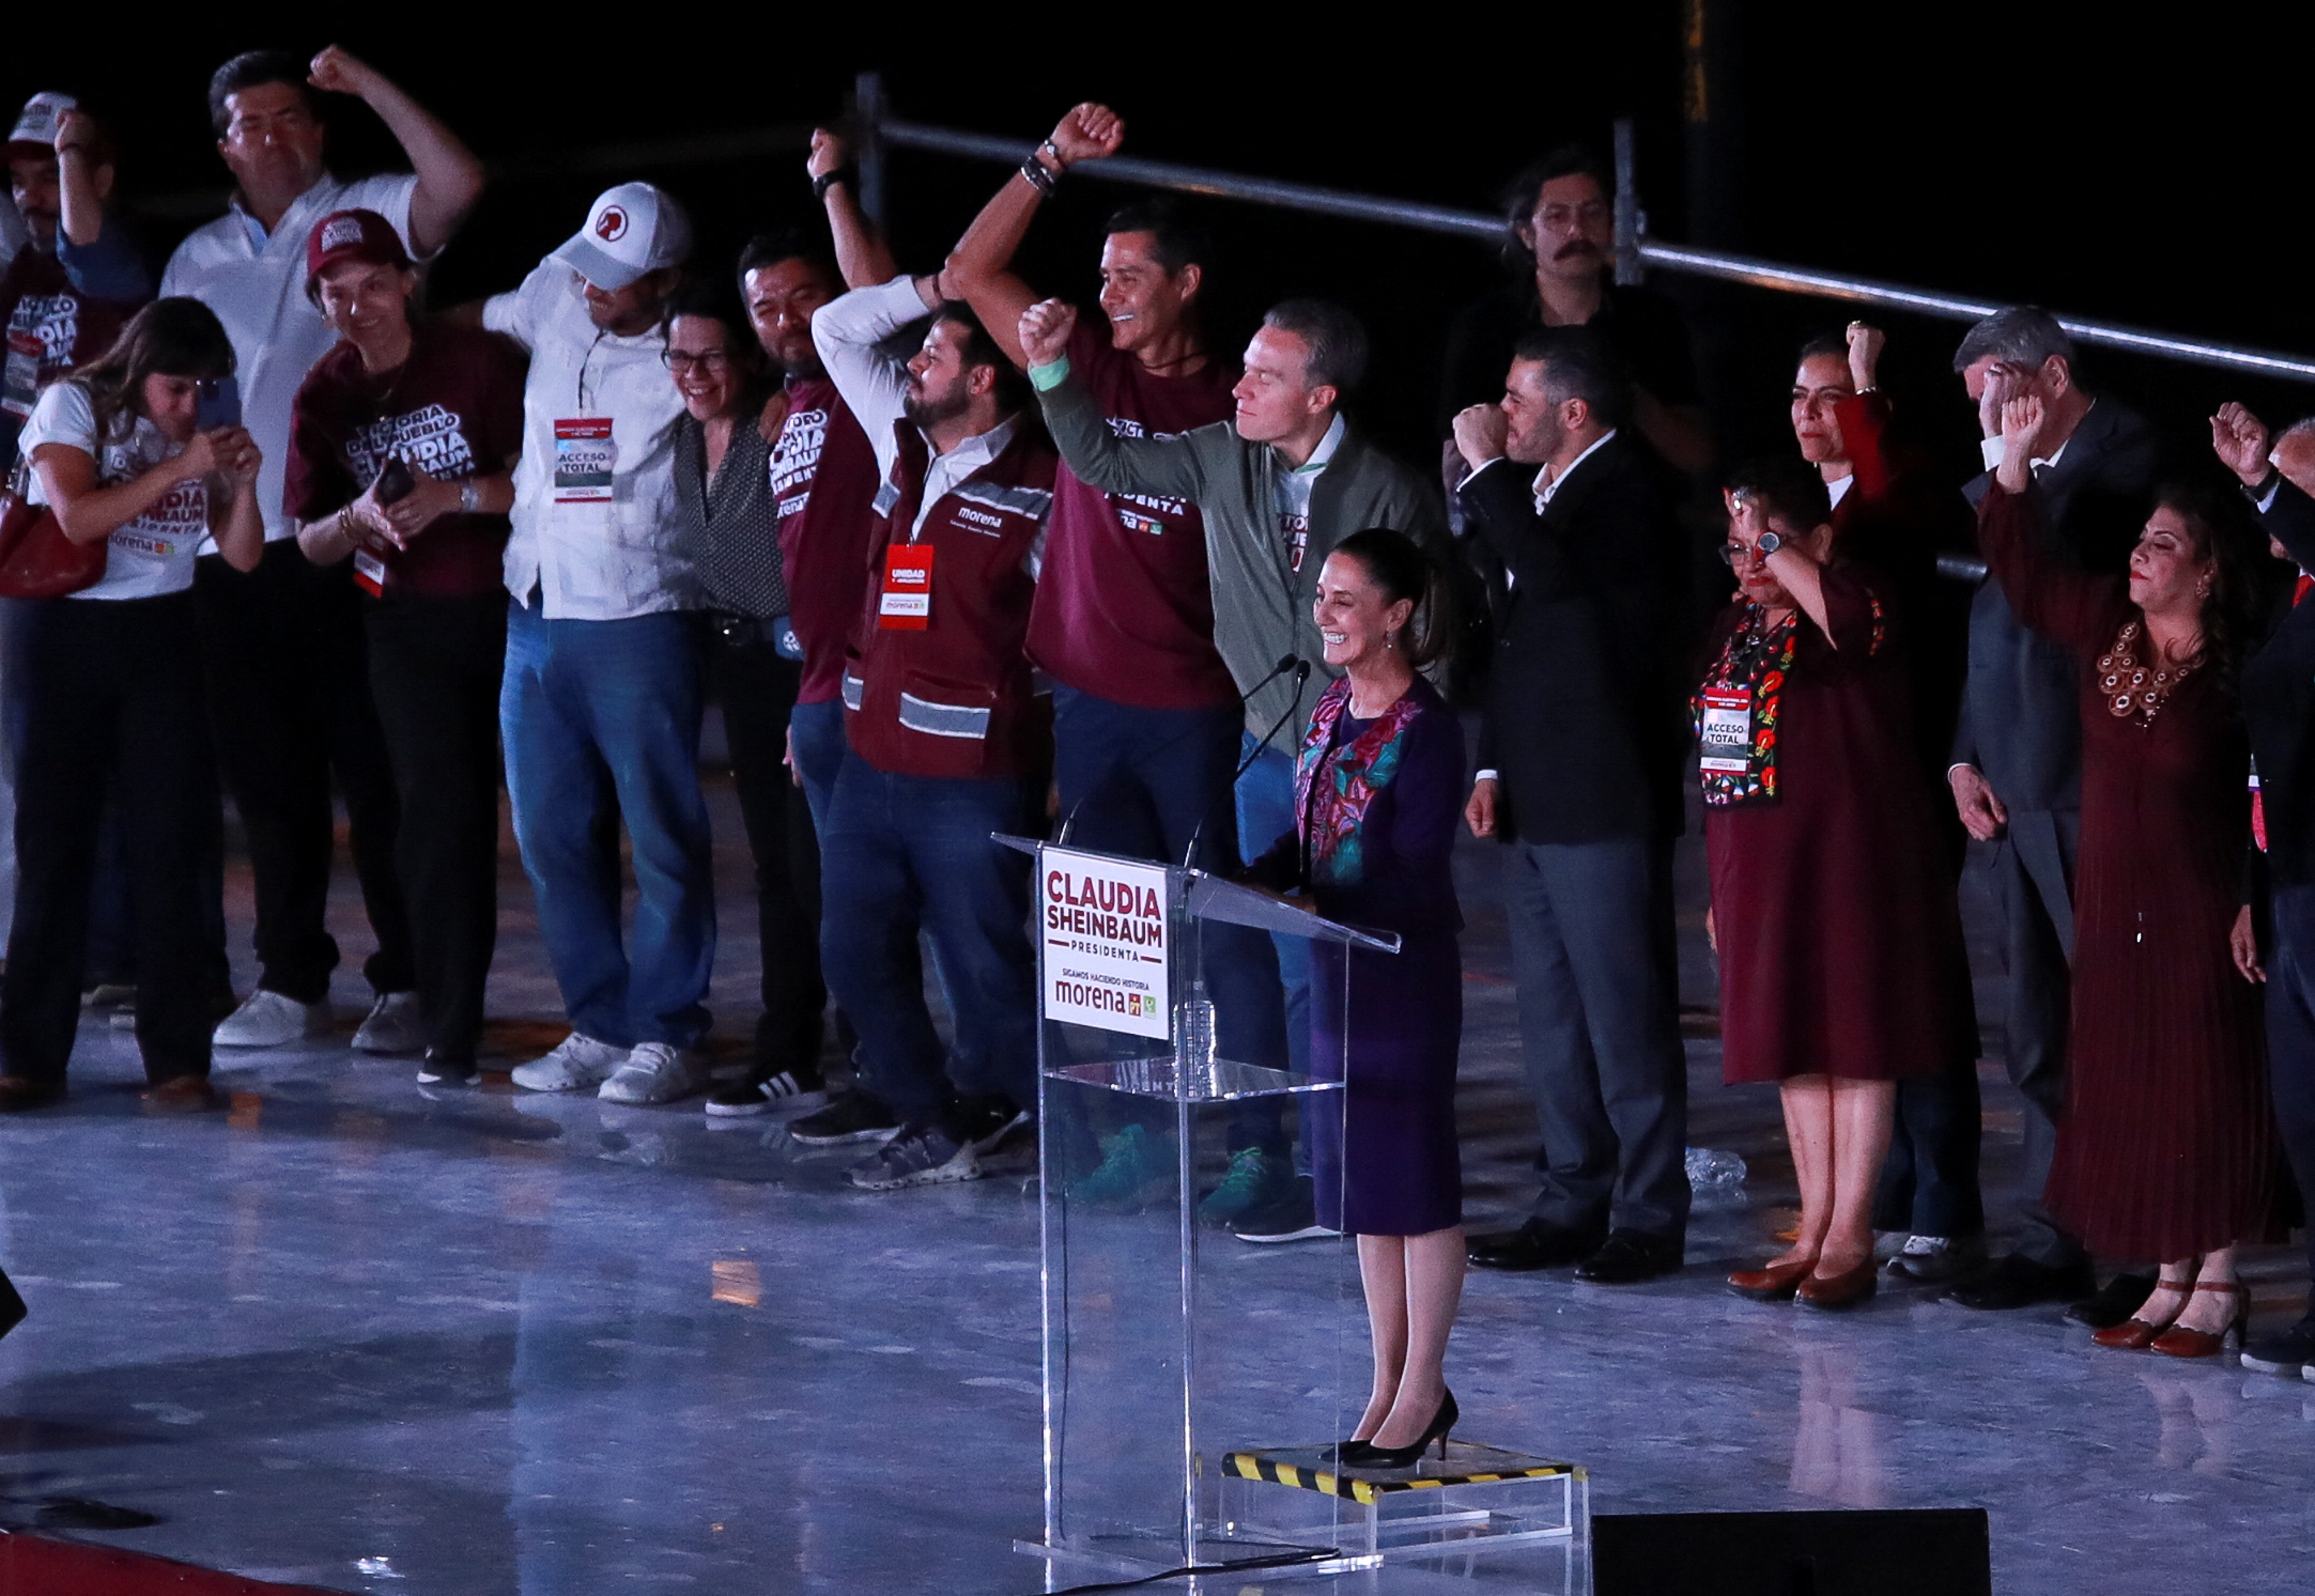 Mexico's Sheinbaum wins Mexican presidency